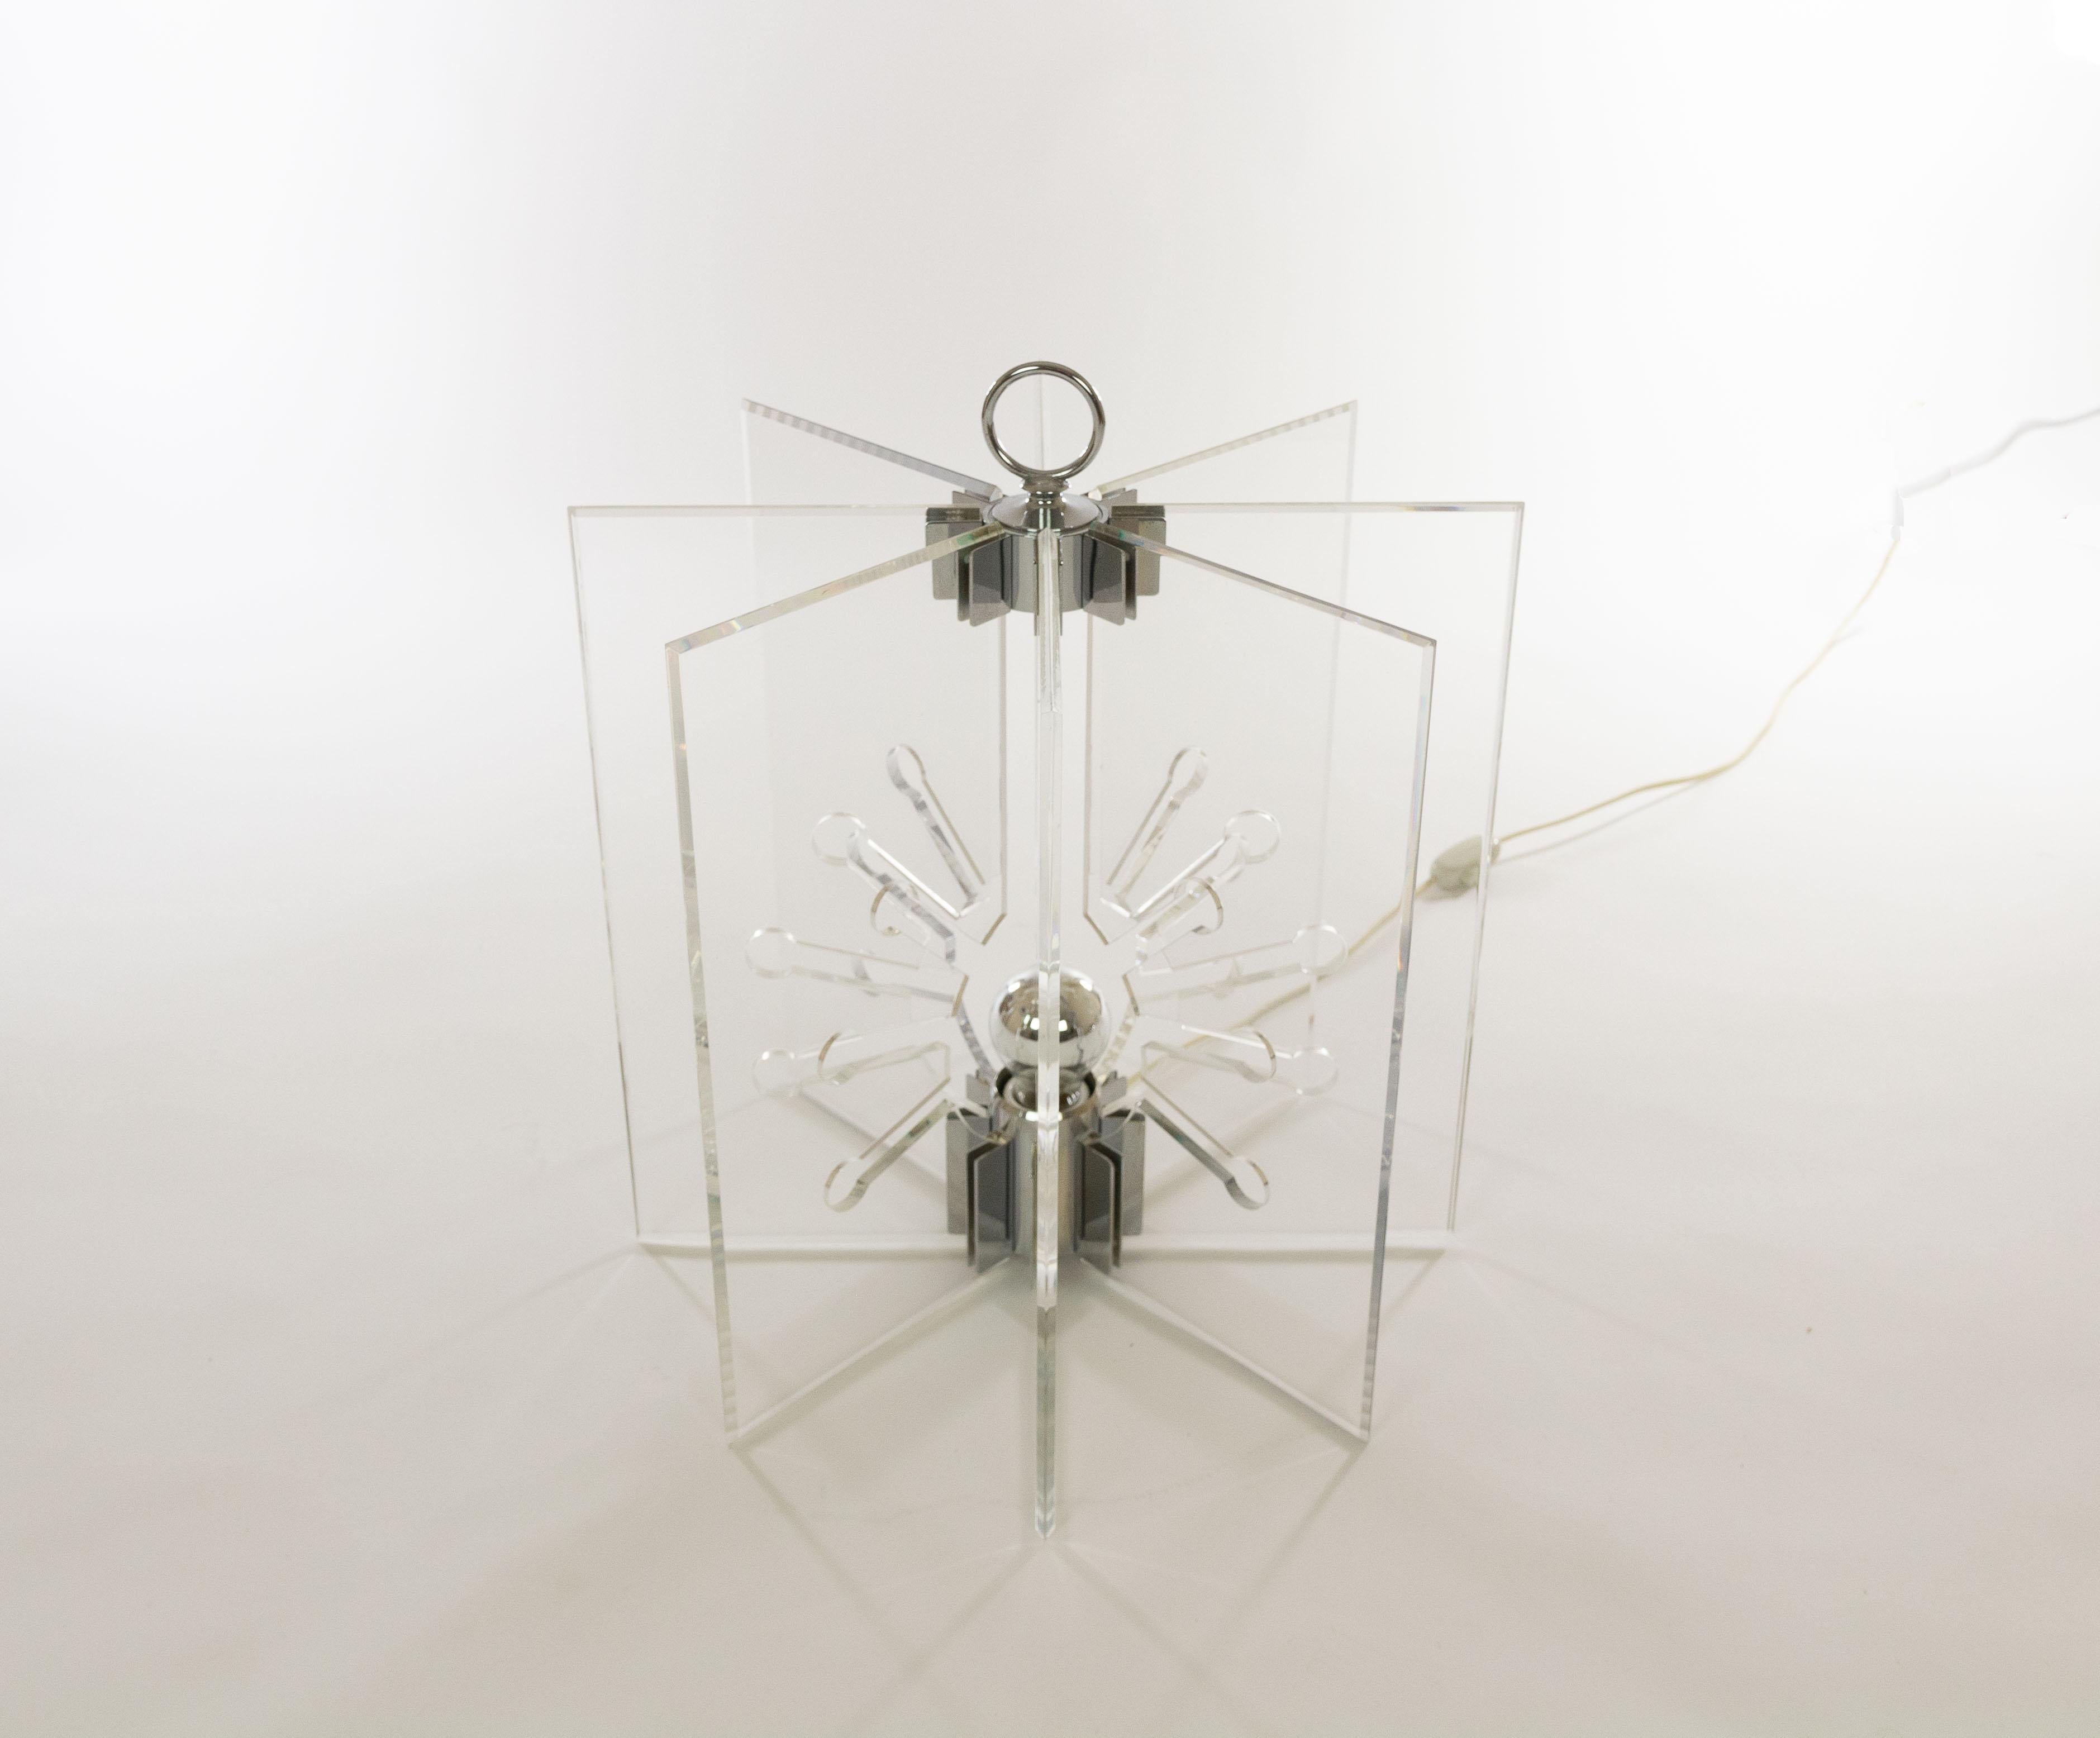 Lampe de table modèle 524 conçue par Franco Albini et Franca Helg et fabriquée par Arteluce.

La maquette se compose de huit panneaux rectangulaires en Perspex transparent placés en forme d'étoile. Les panneaux de Perspex sont maintenus ensemble